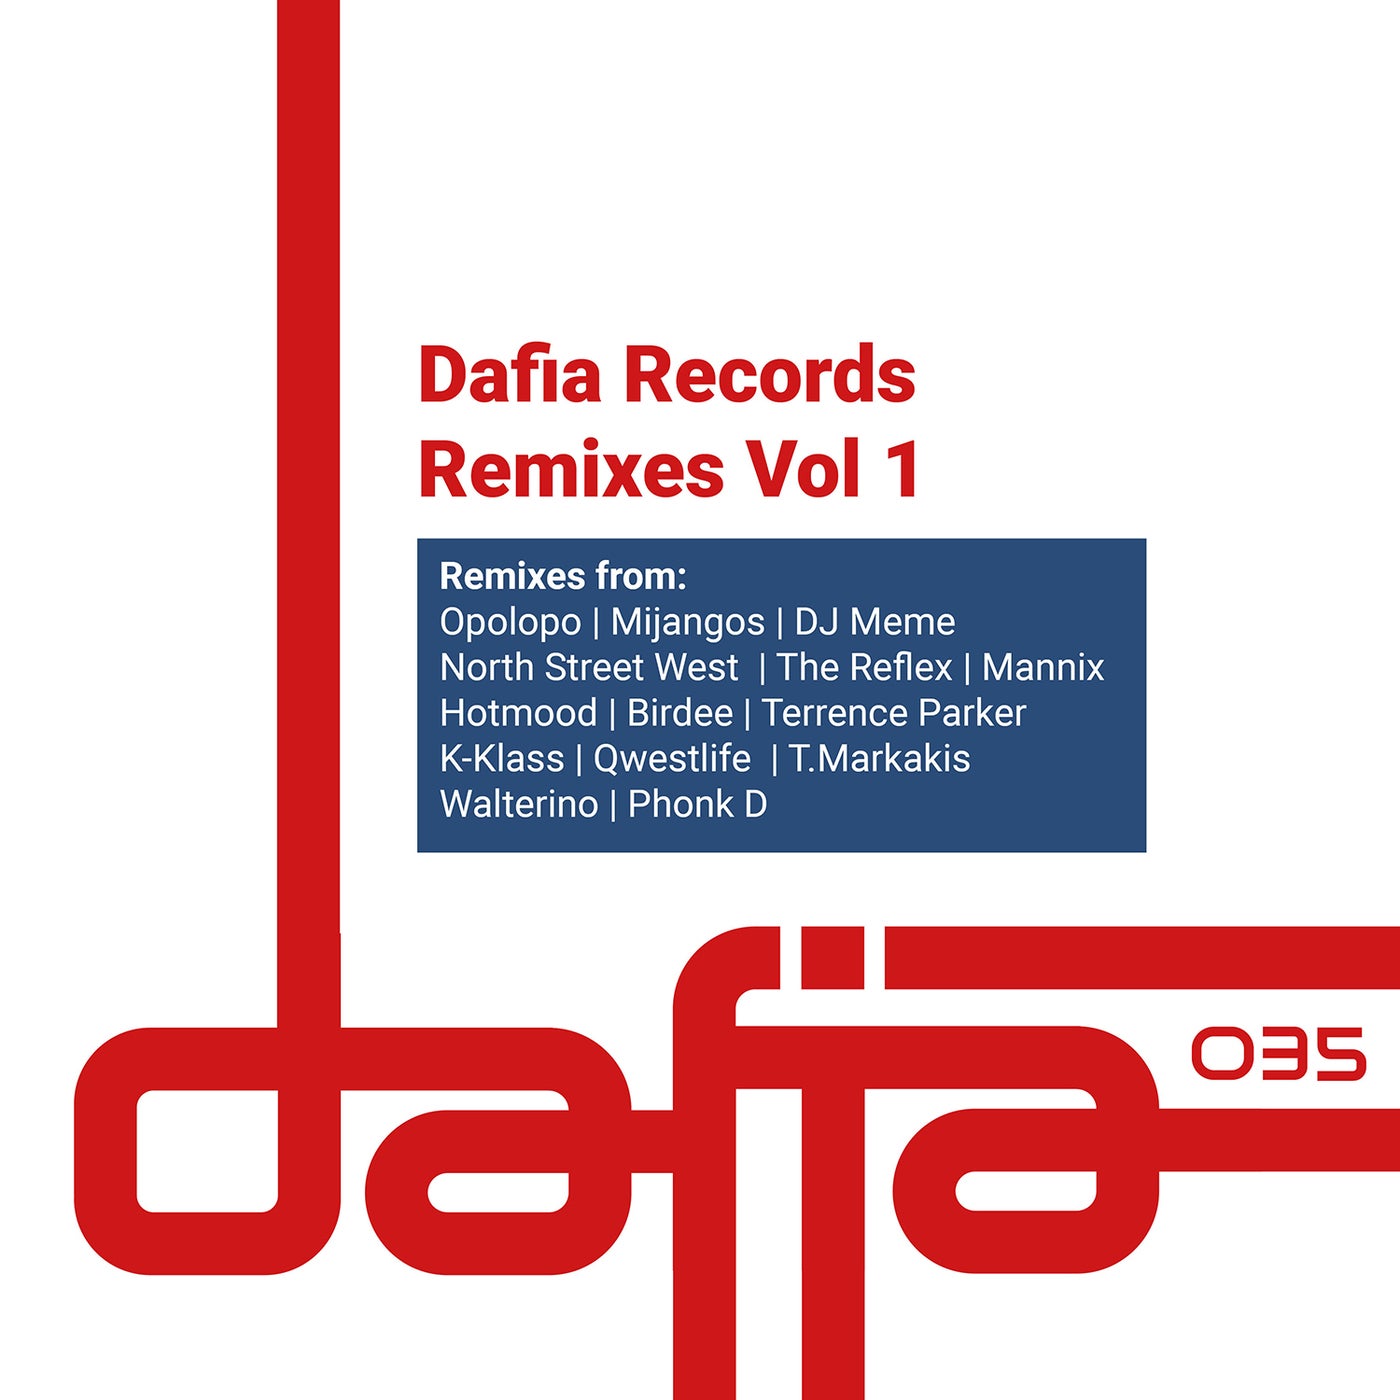 Dafia Records the Remixes, Vol. 1